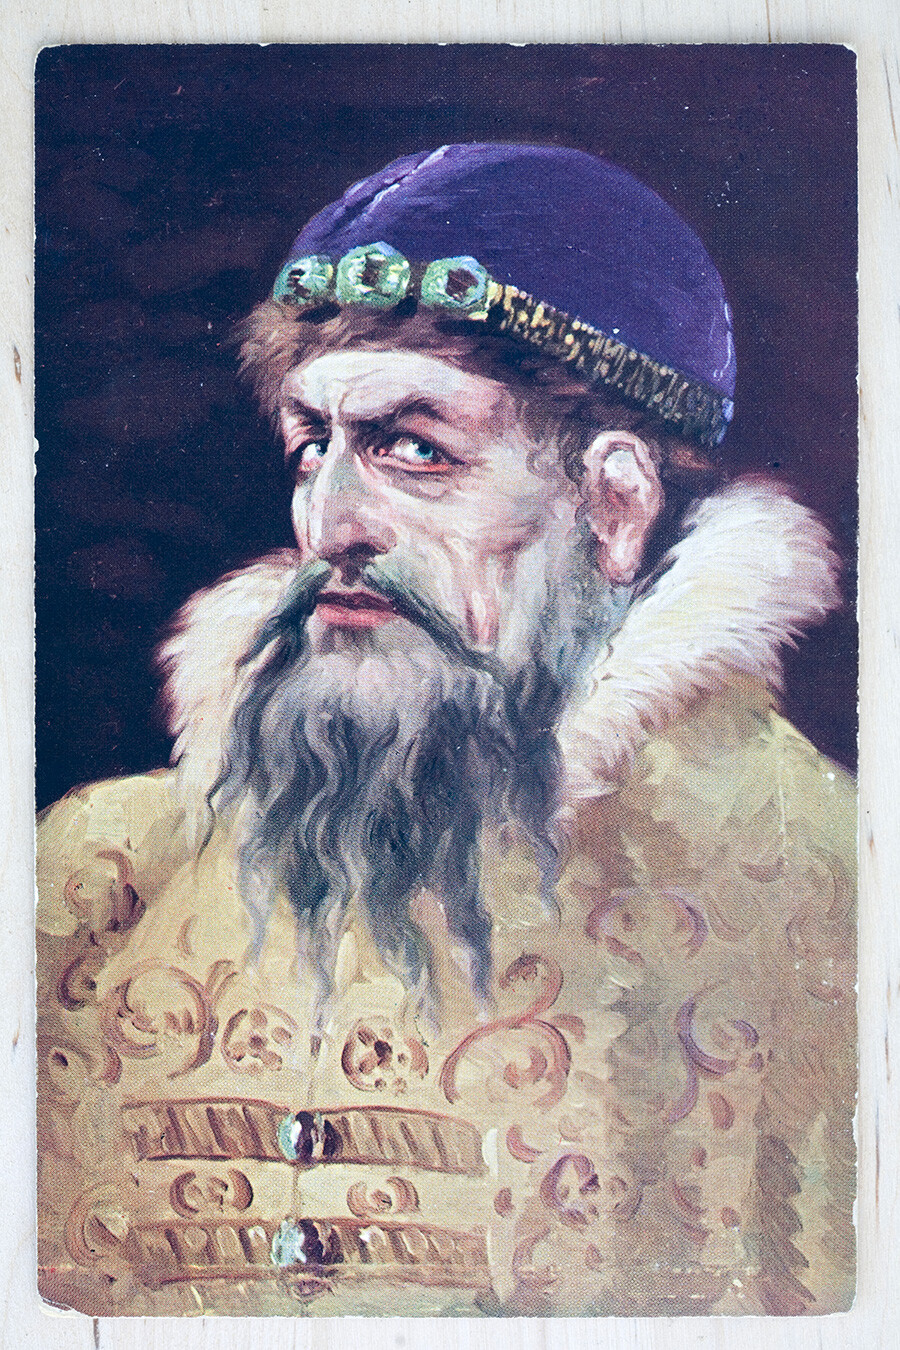 Cartolina russa dei primi del Novecento raffigurante Ivan il Terribile